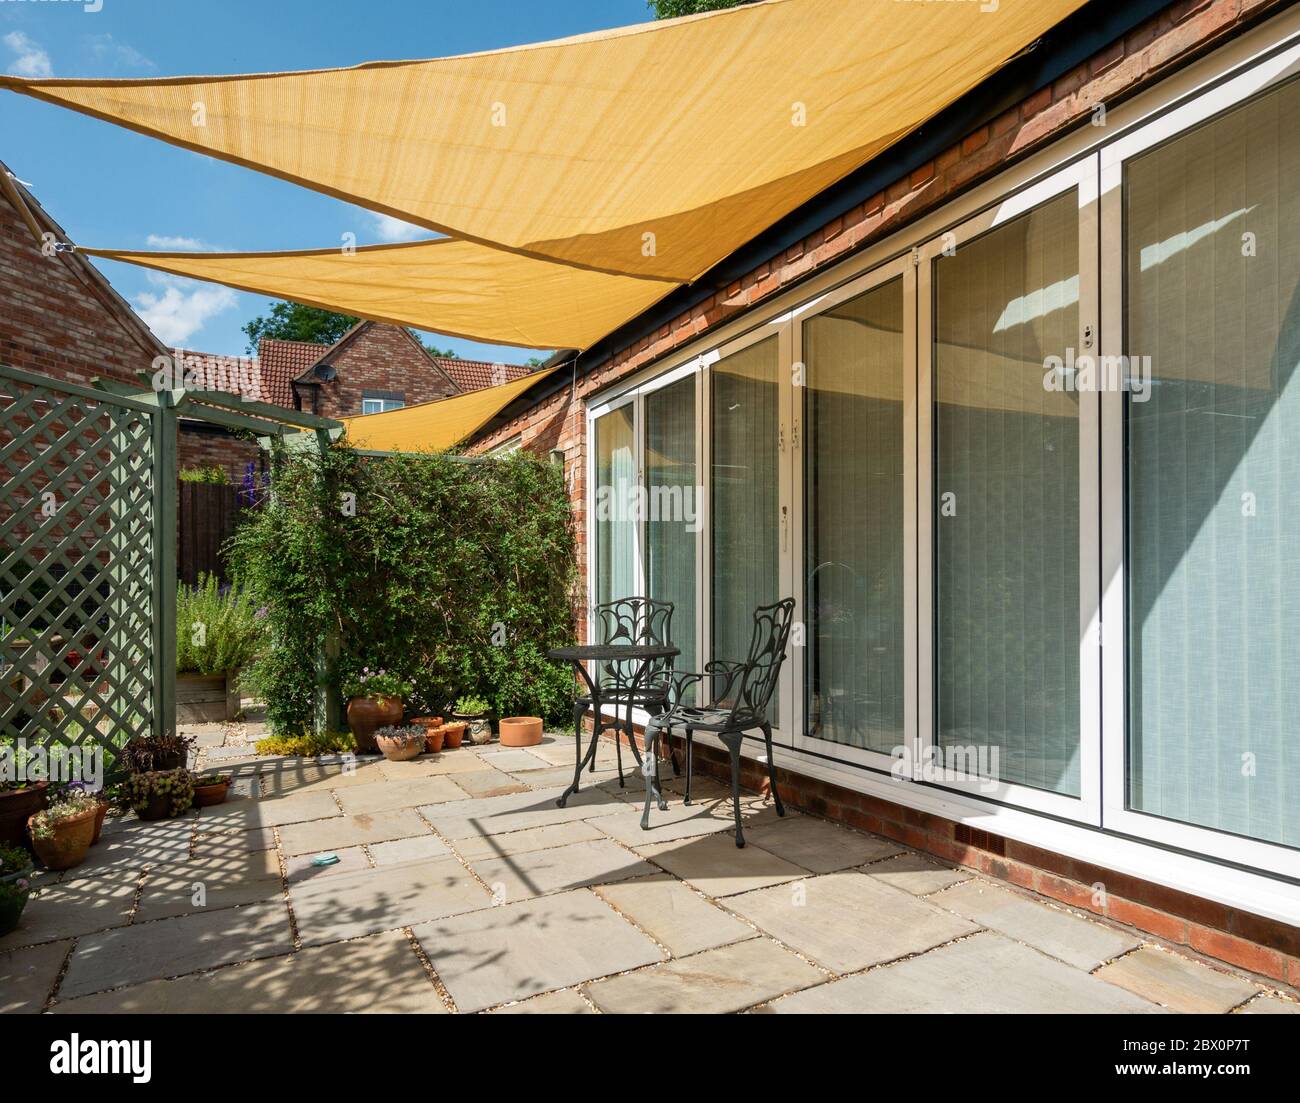 Piccolo patio giardino con ombrellone giallo, triangolare e cielo blu sopra in una soleggiata giornata estiva, Inghilterra, Regno Unito Foto Stock